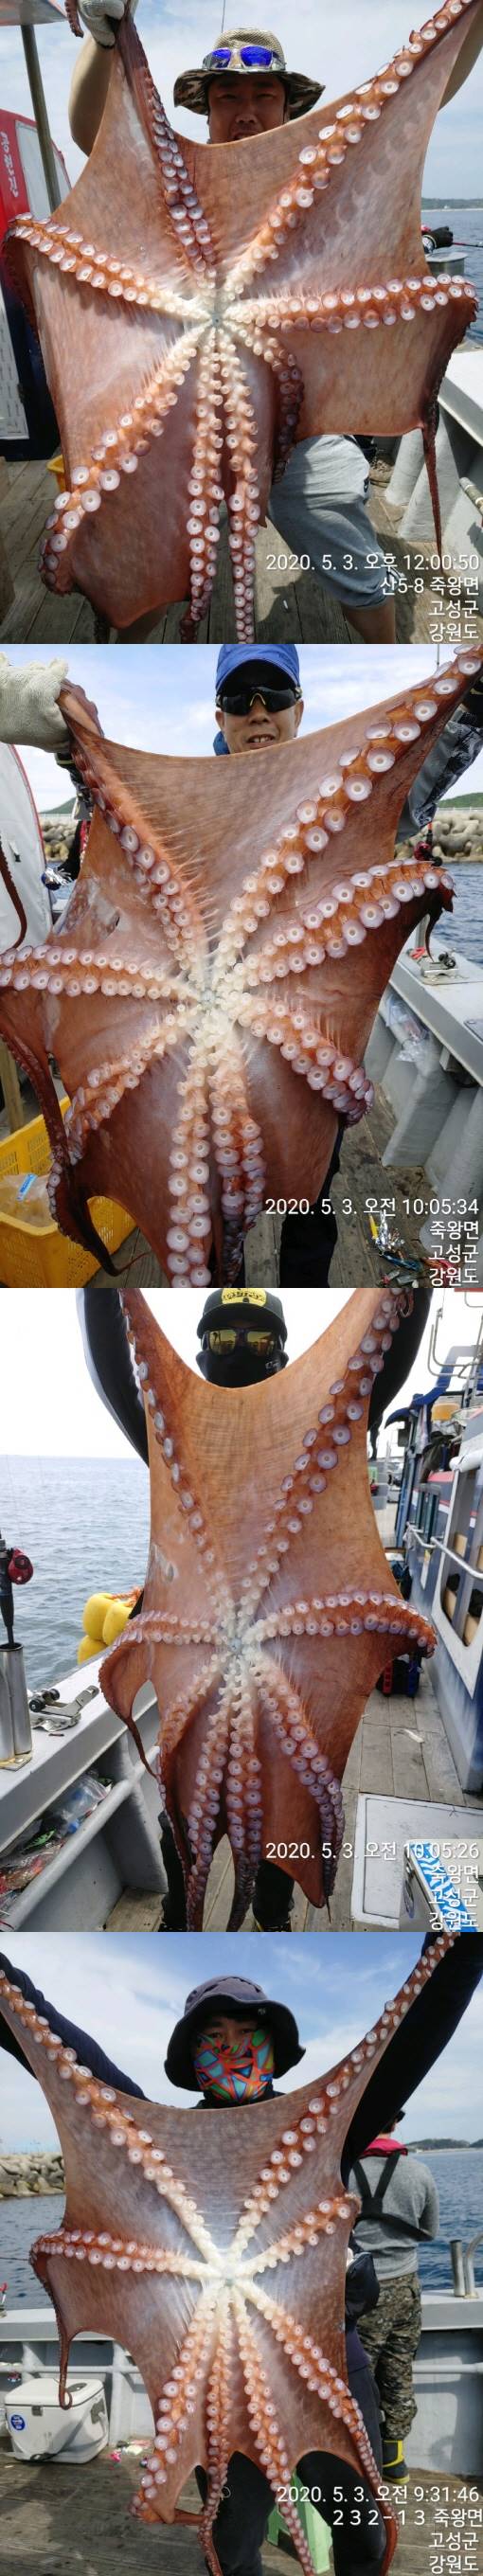 22인승 돌핀호 / 어제(3일) 대왕문어 대박 조황입니다.